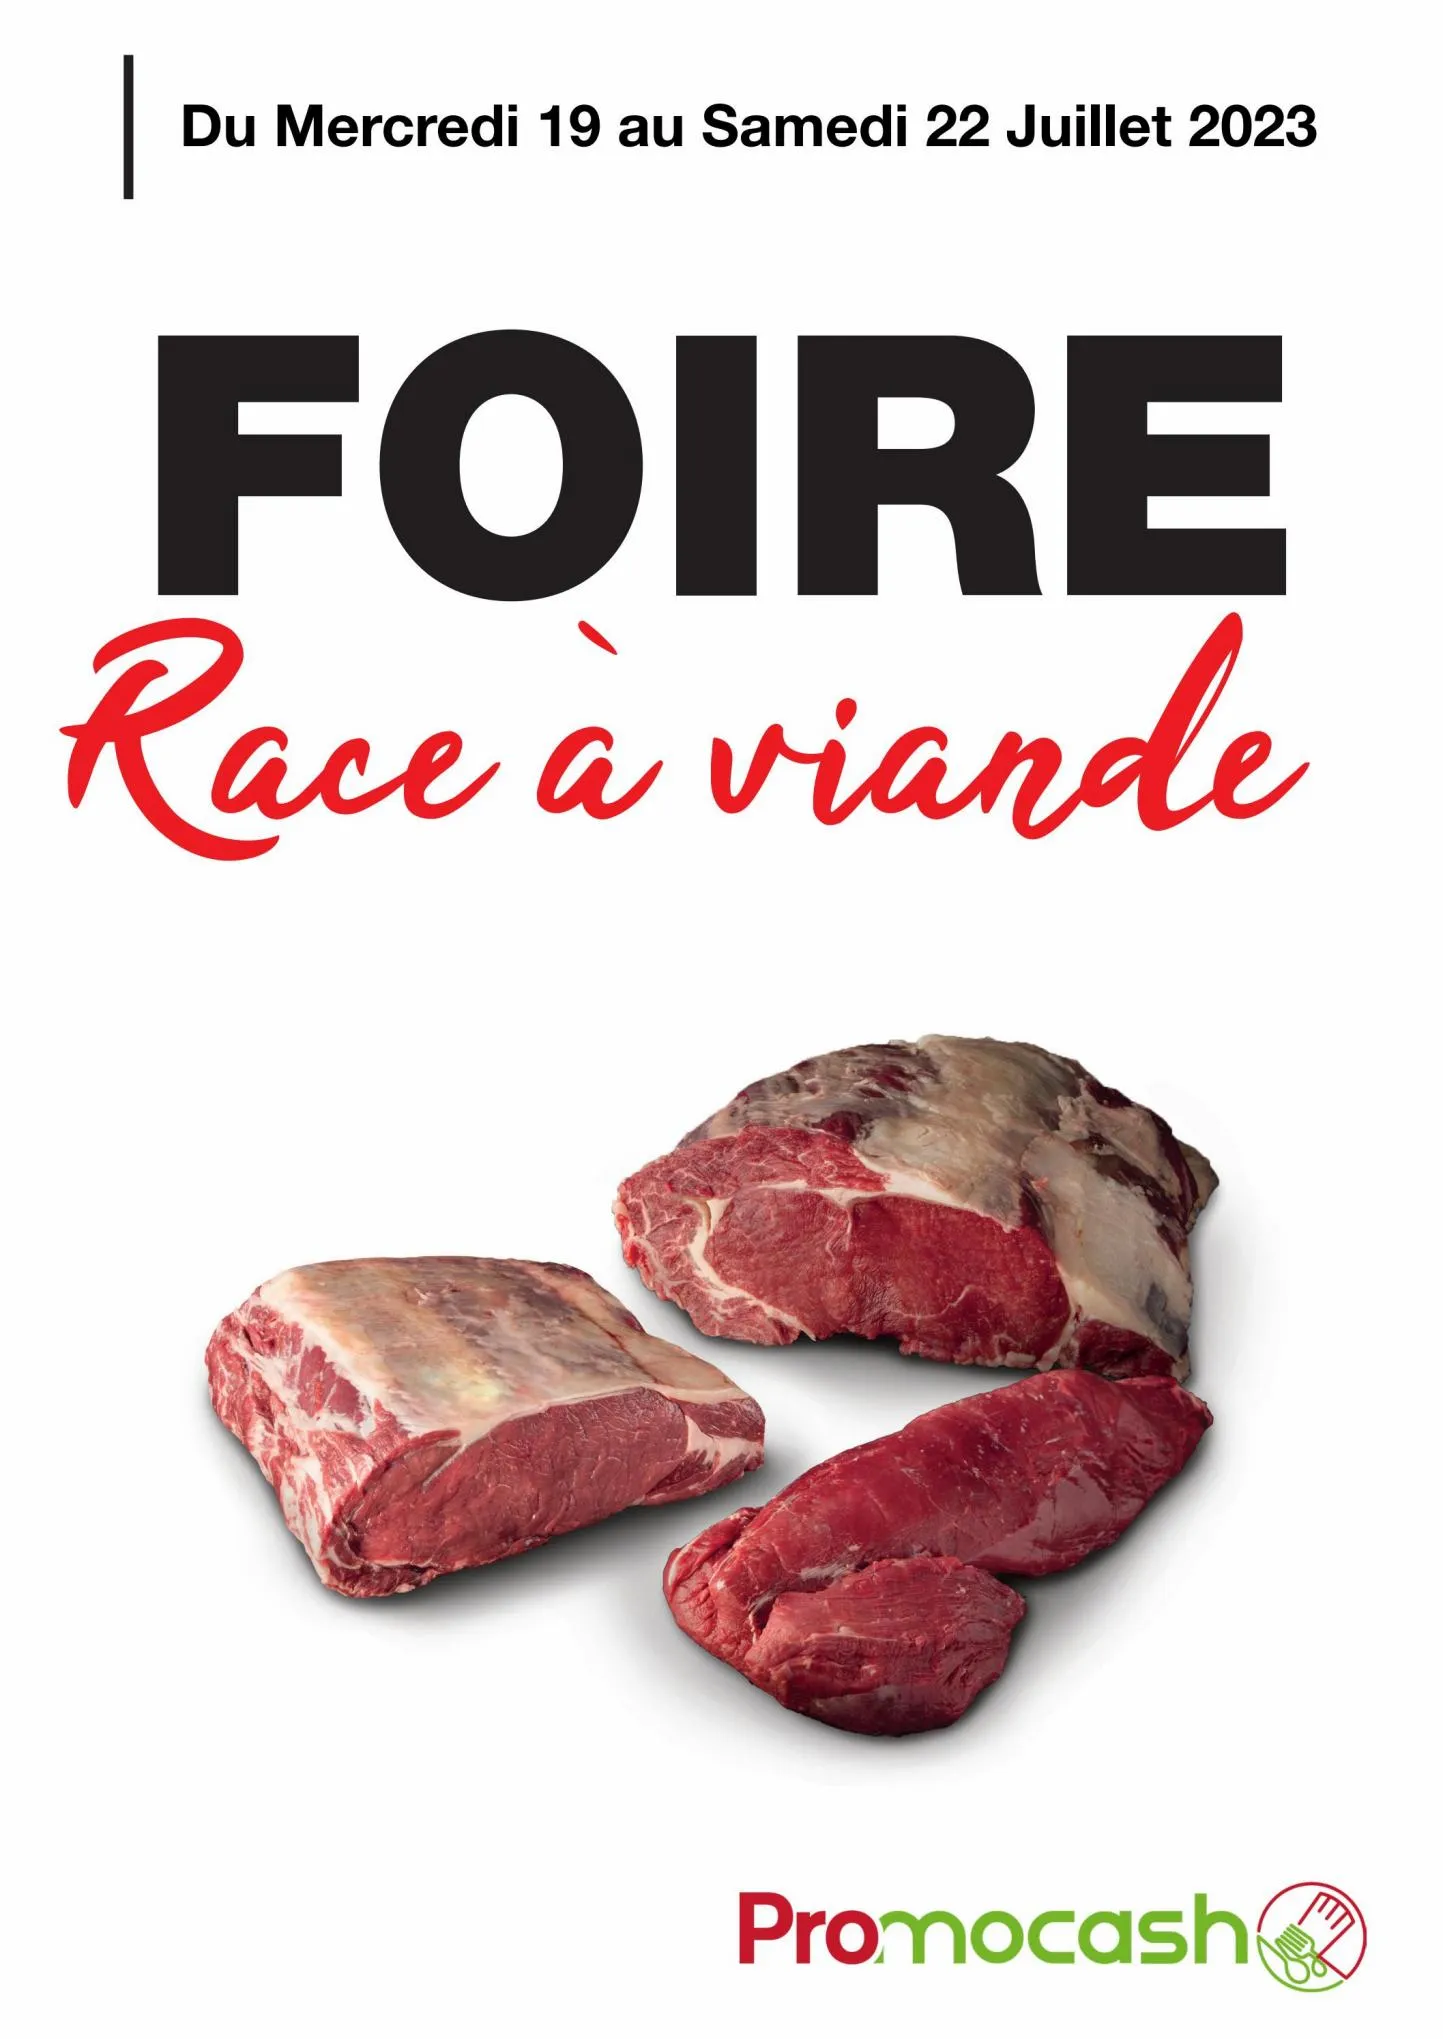 Catalogue Foire race a viande, page 00001